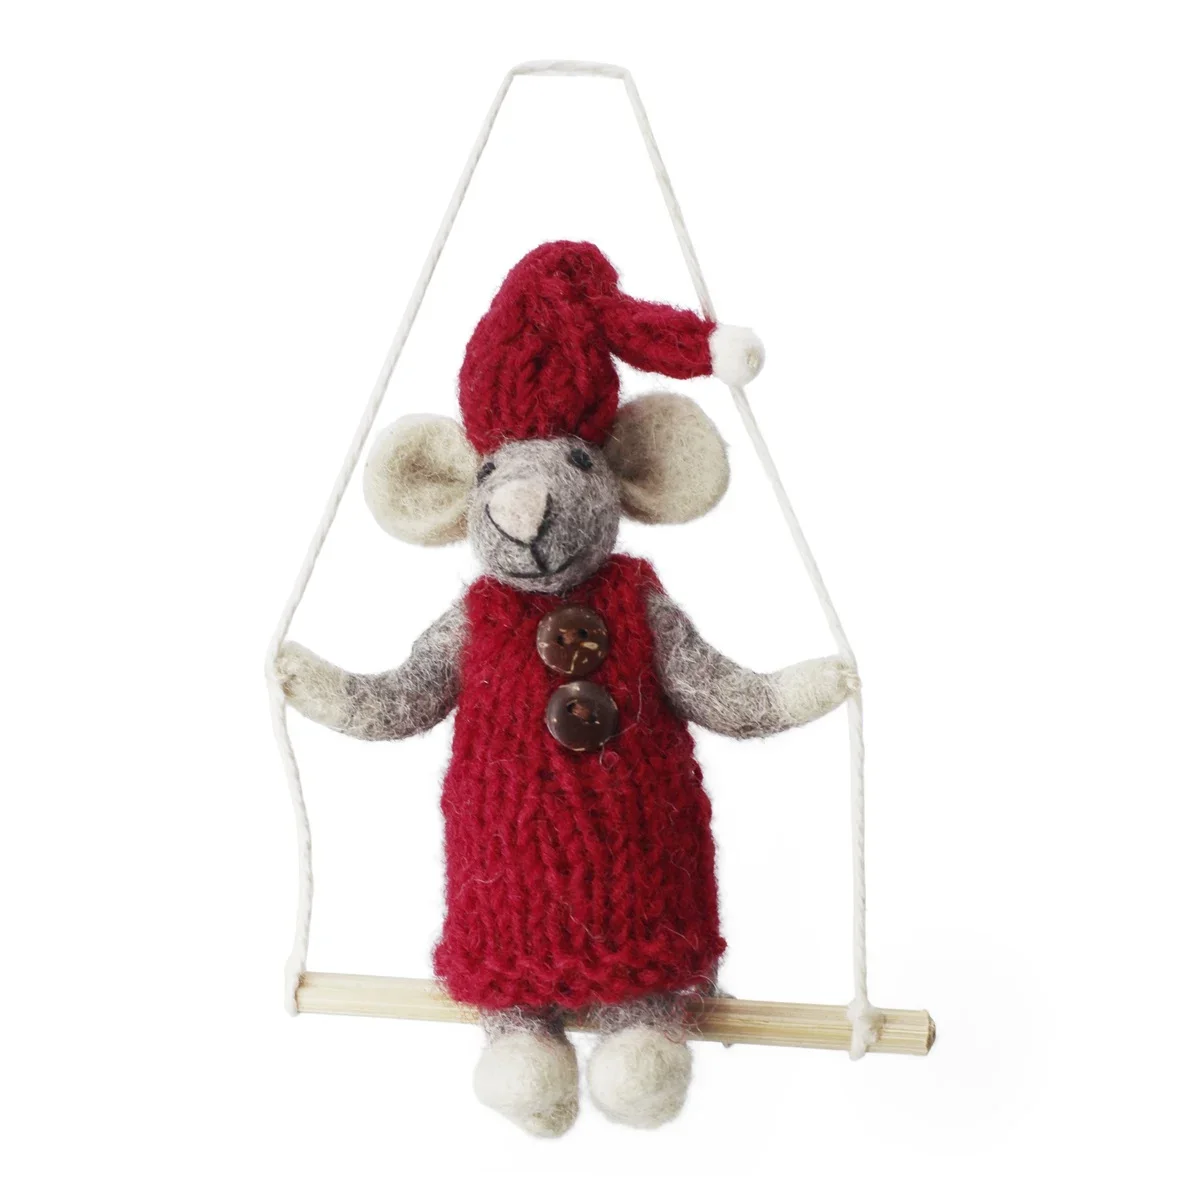 Filtet gr mus med rd kjole og gynge fra En Gry & Sif, 12 cm